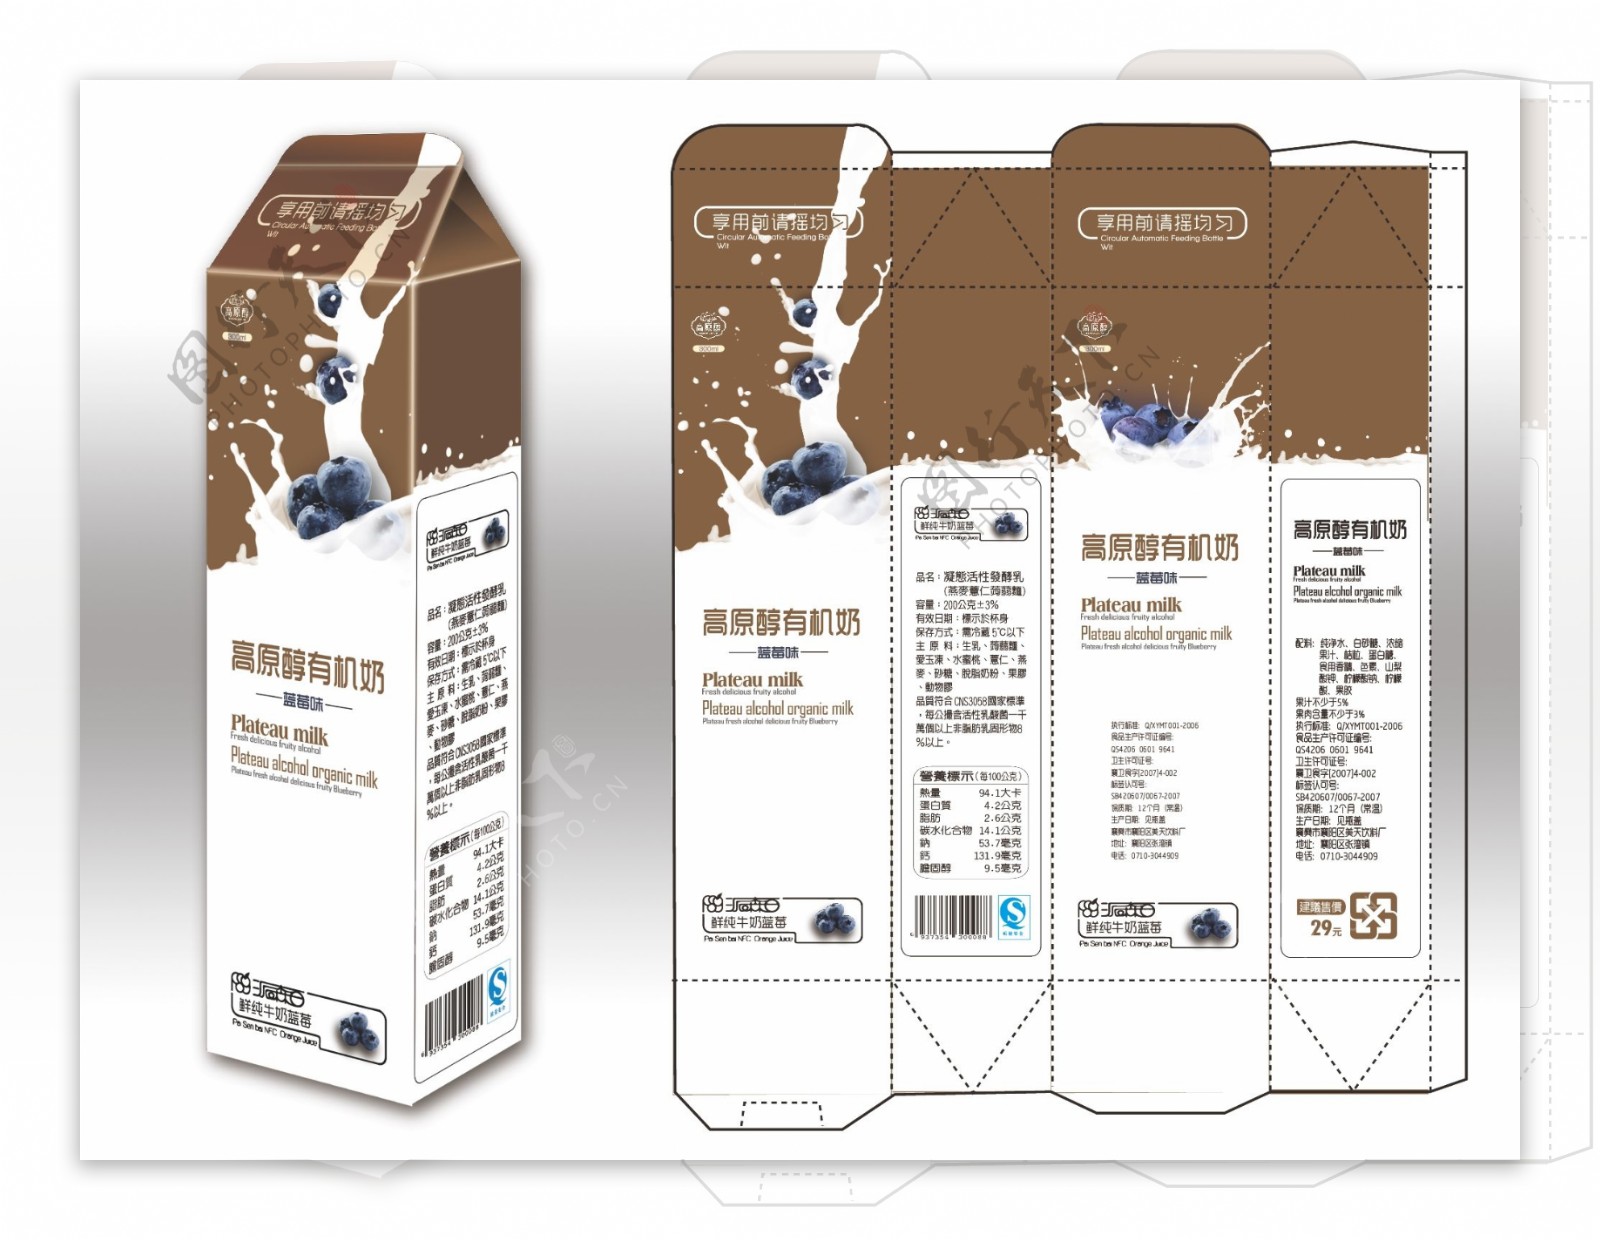 蓝莓牛奶包装盒包装设计矢量图